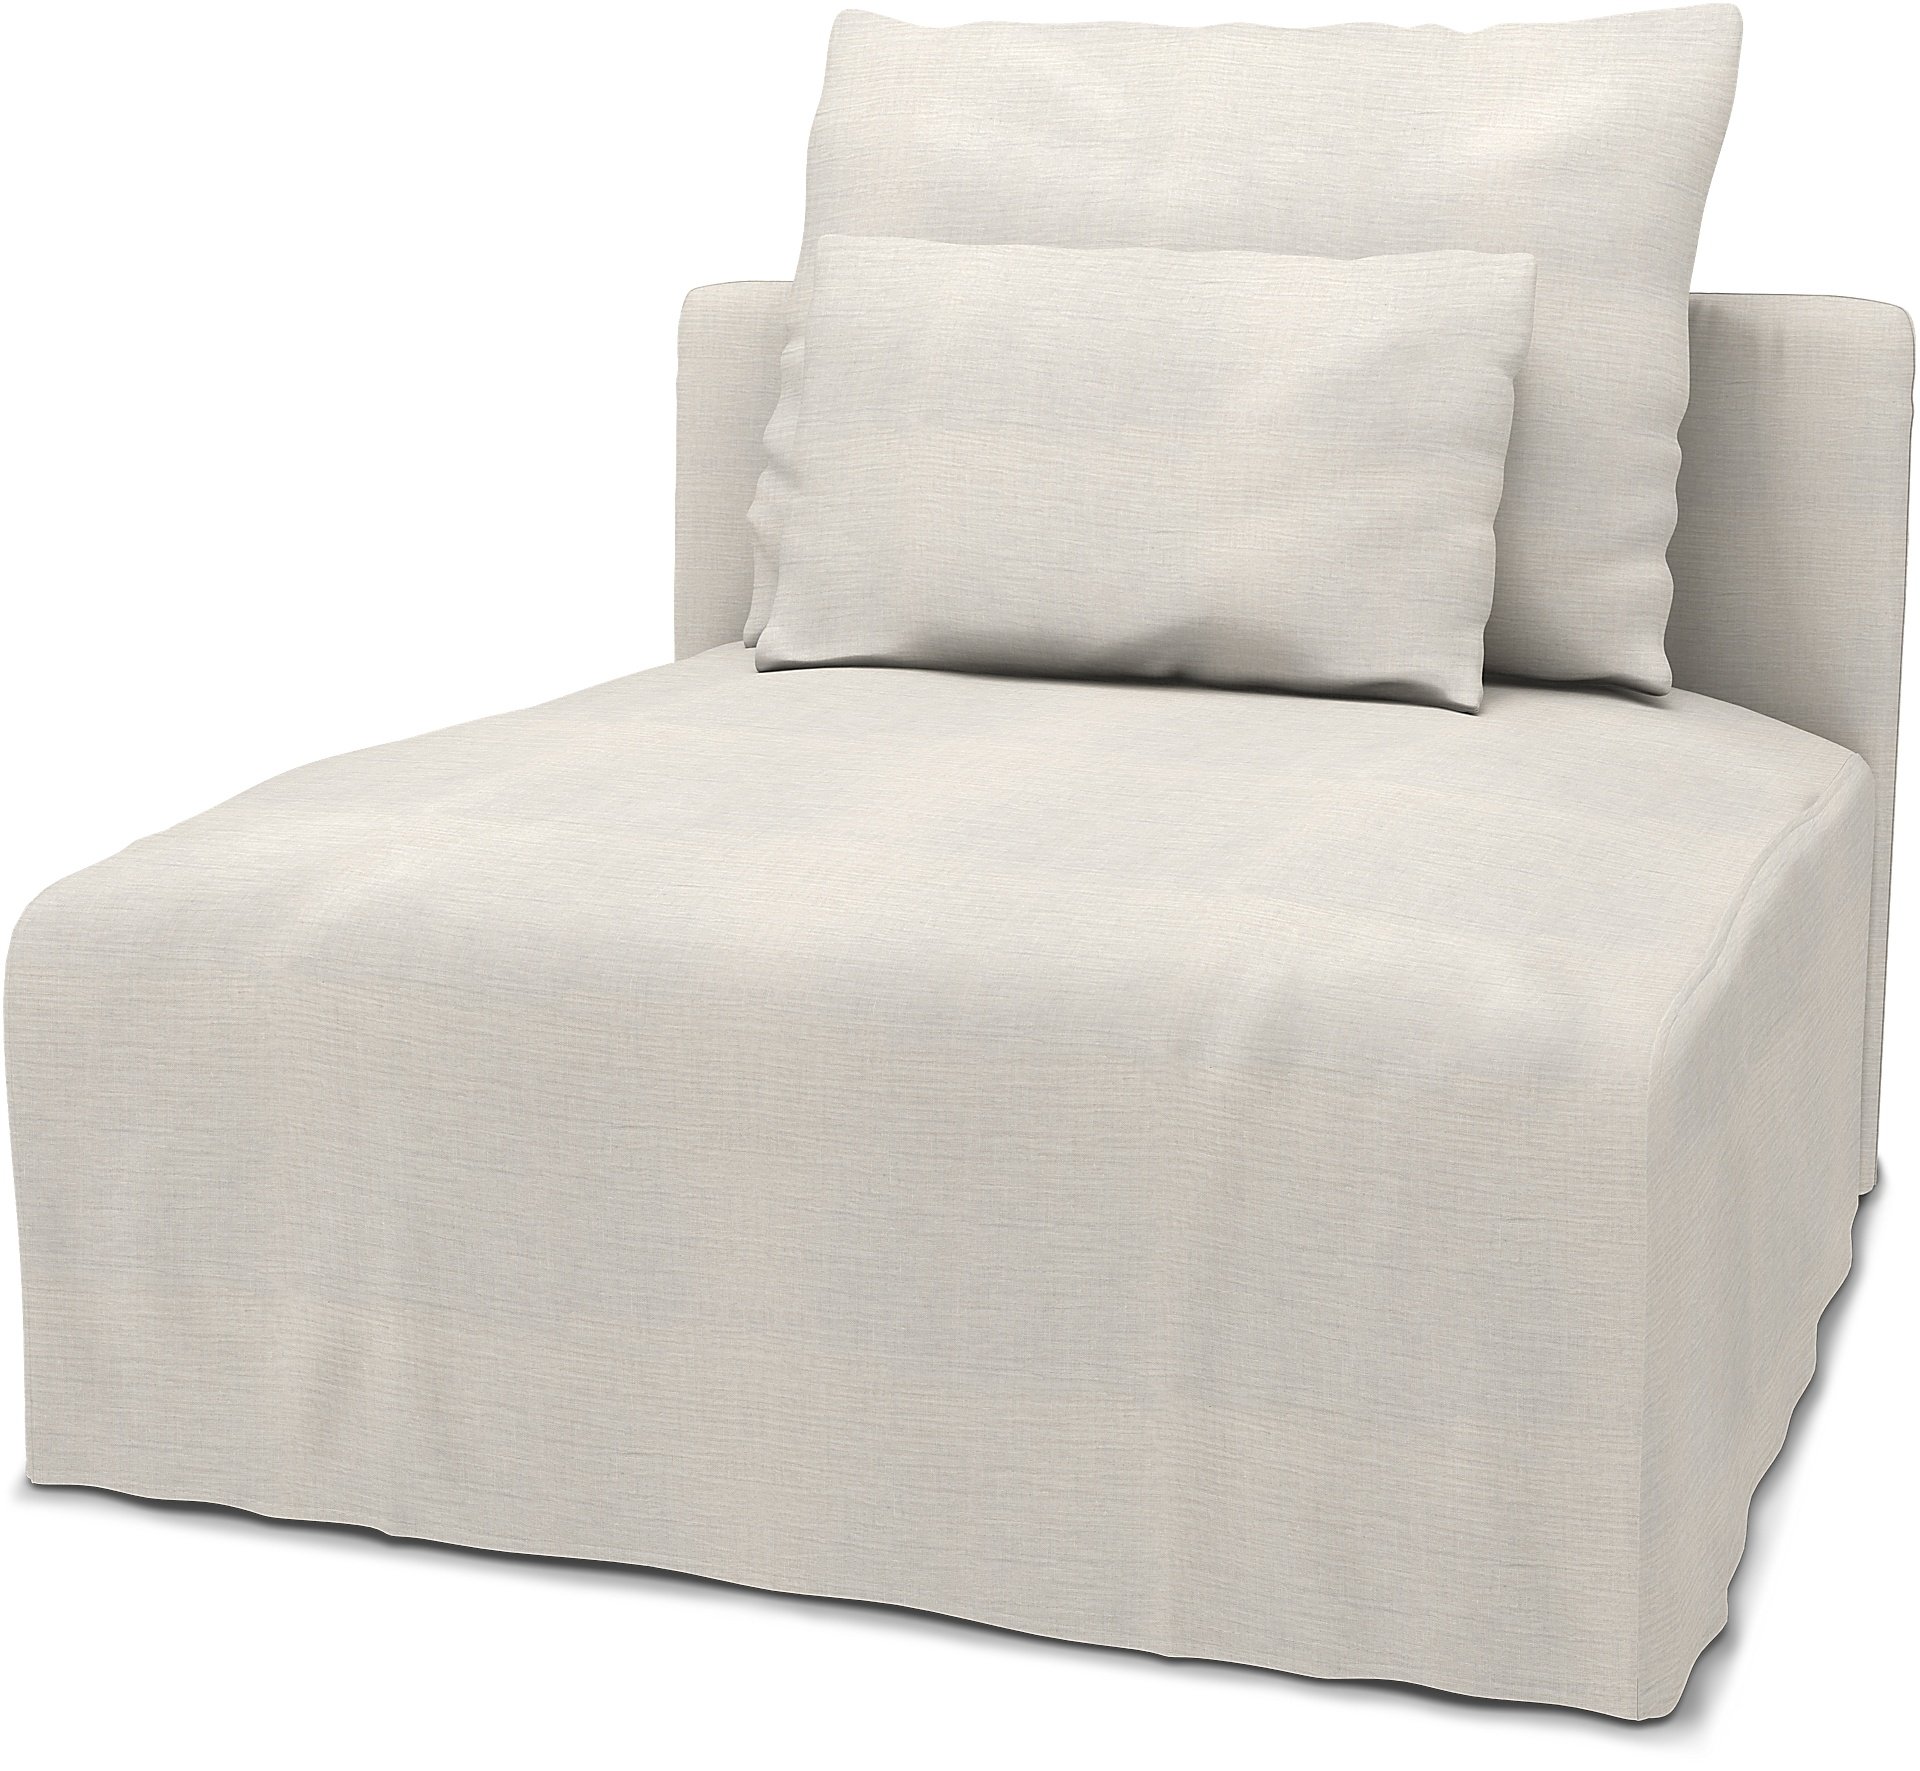 IKEA - Soderhamn 1 Seat Section Cover, Soft White, Linen - Bemz